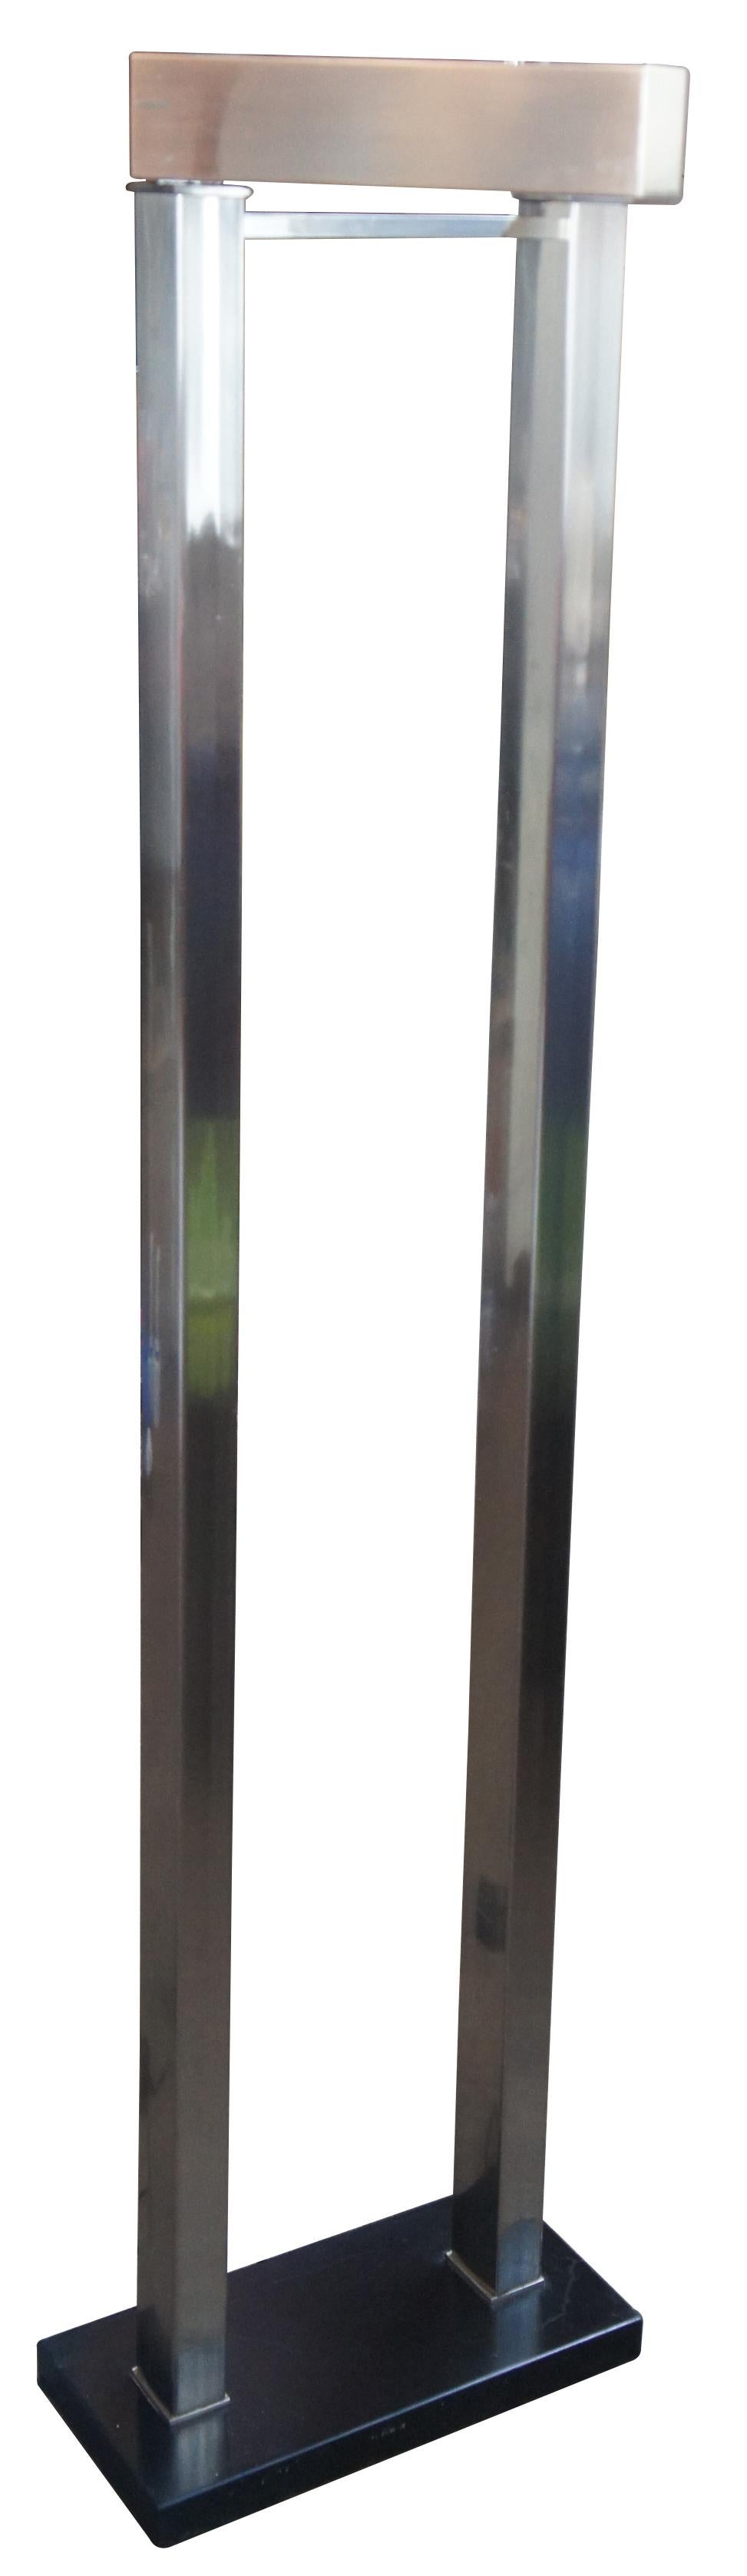 Eine moderne schwenkbare Metallleuchte von The Natural Light Co. Modernes, röhrenförmiges Gestell mit schwarzem Sockel. Maße: 61